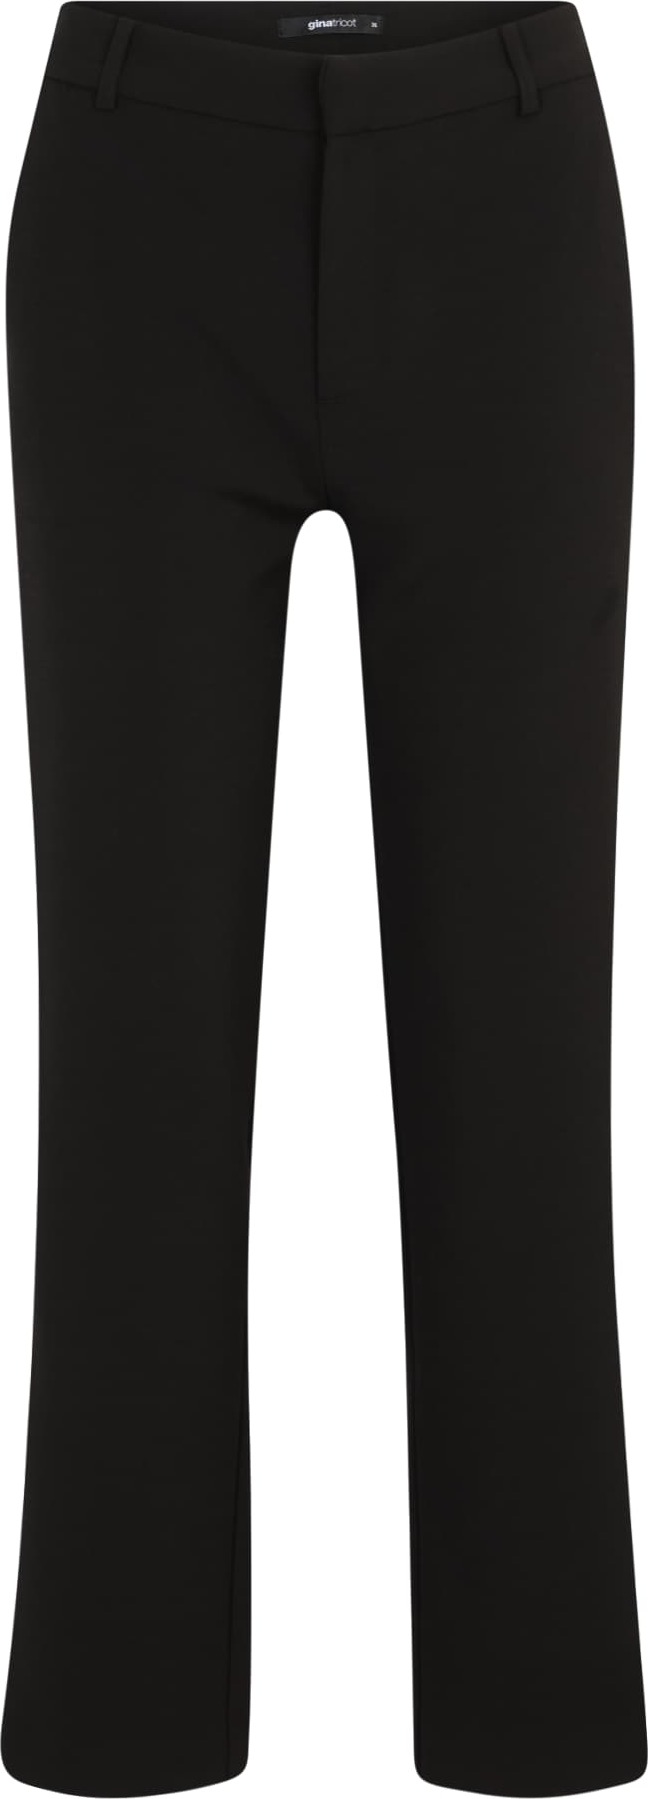 Gina Tricot Petite Kalhoty s puky černá